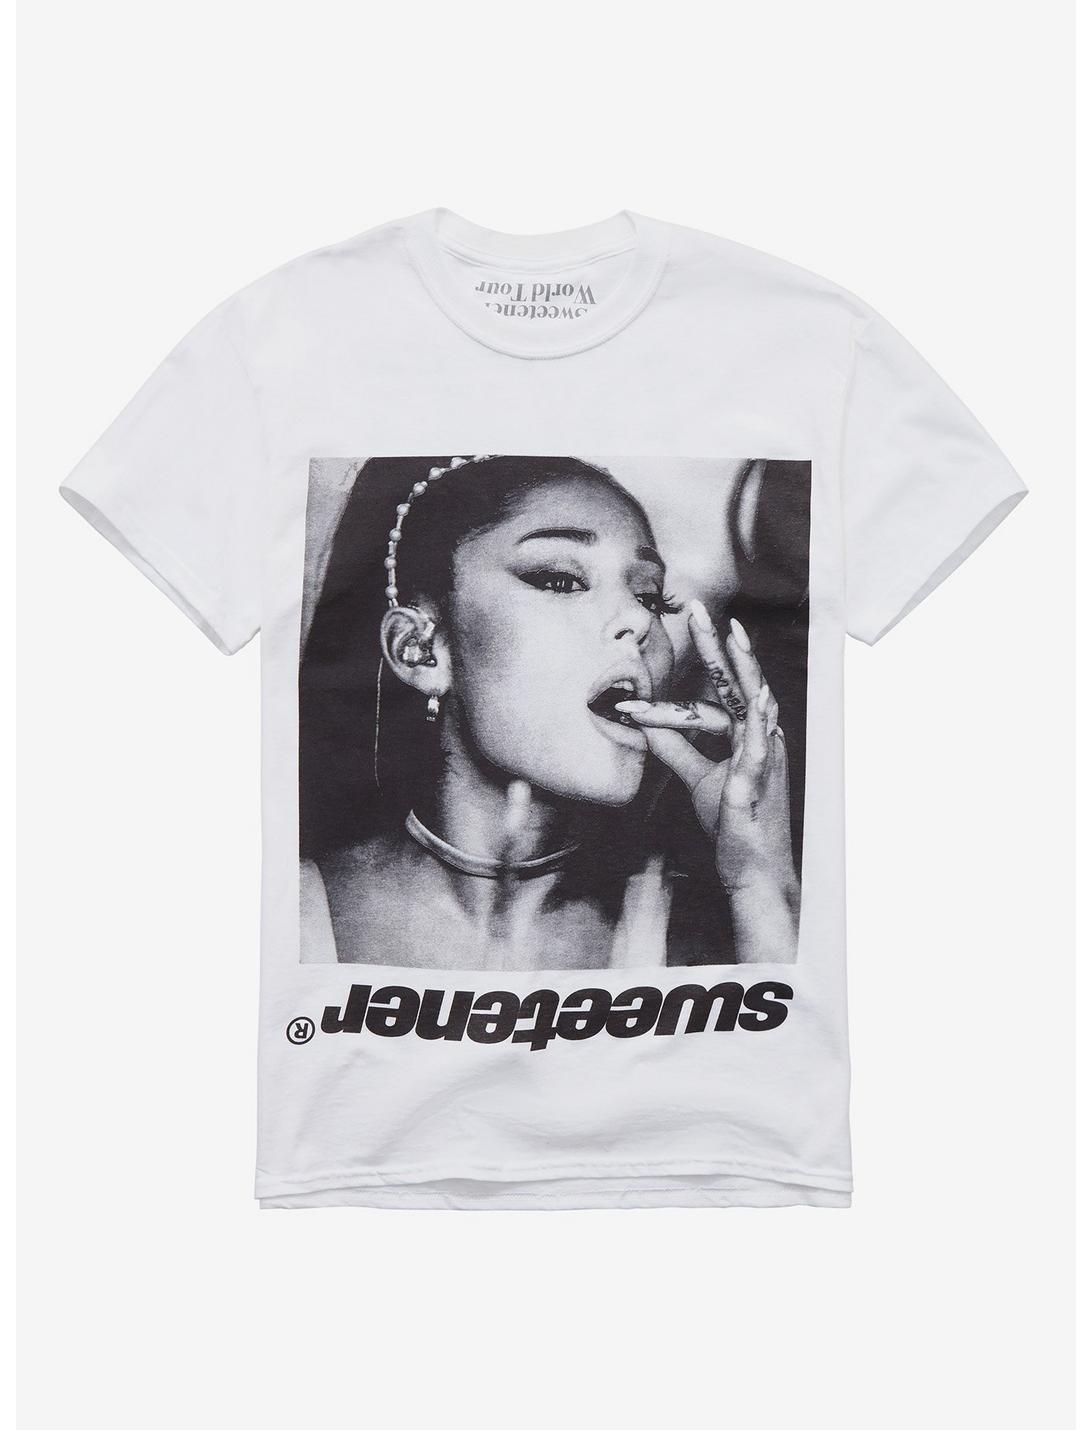 Ariana Grande Sweetener Black & White Photo T-Shirt | Hot Topic